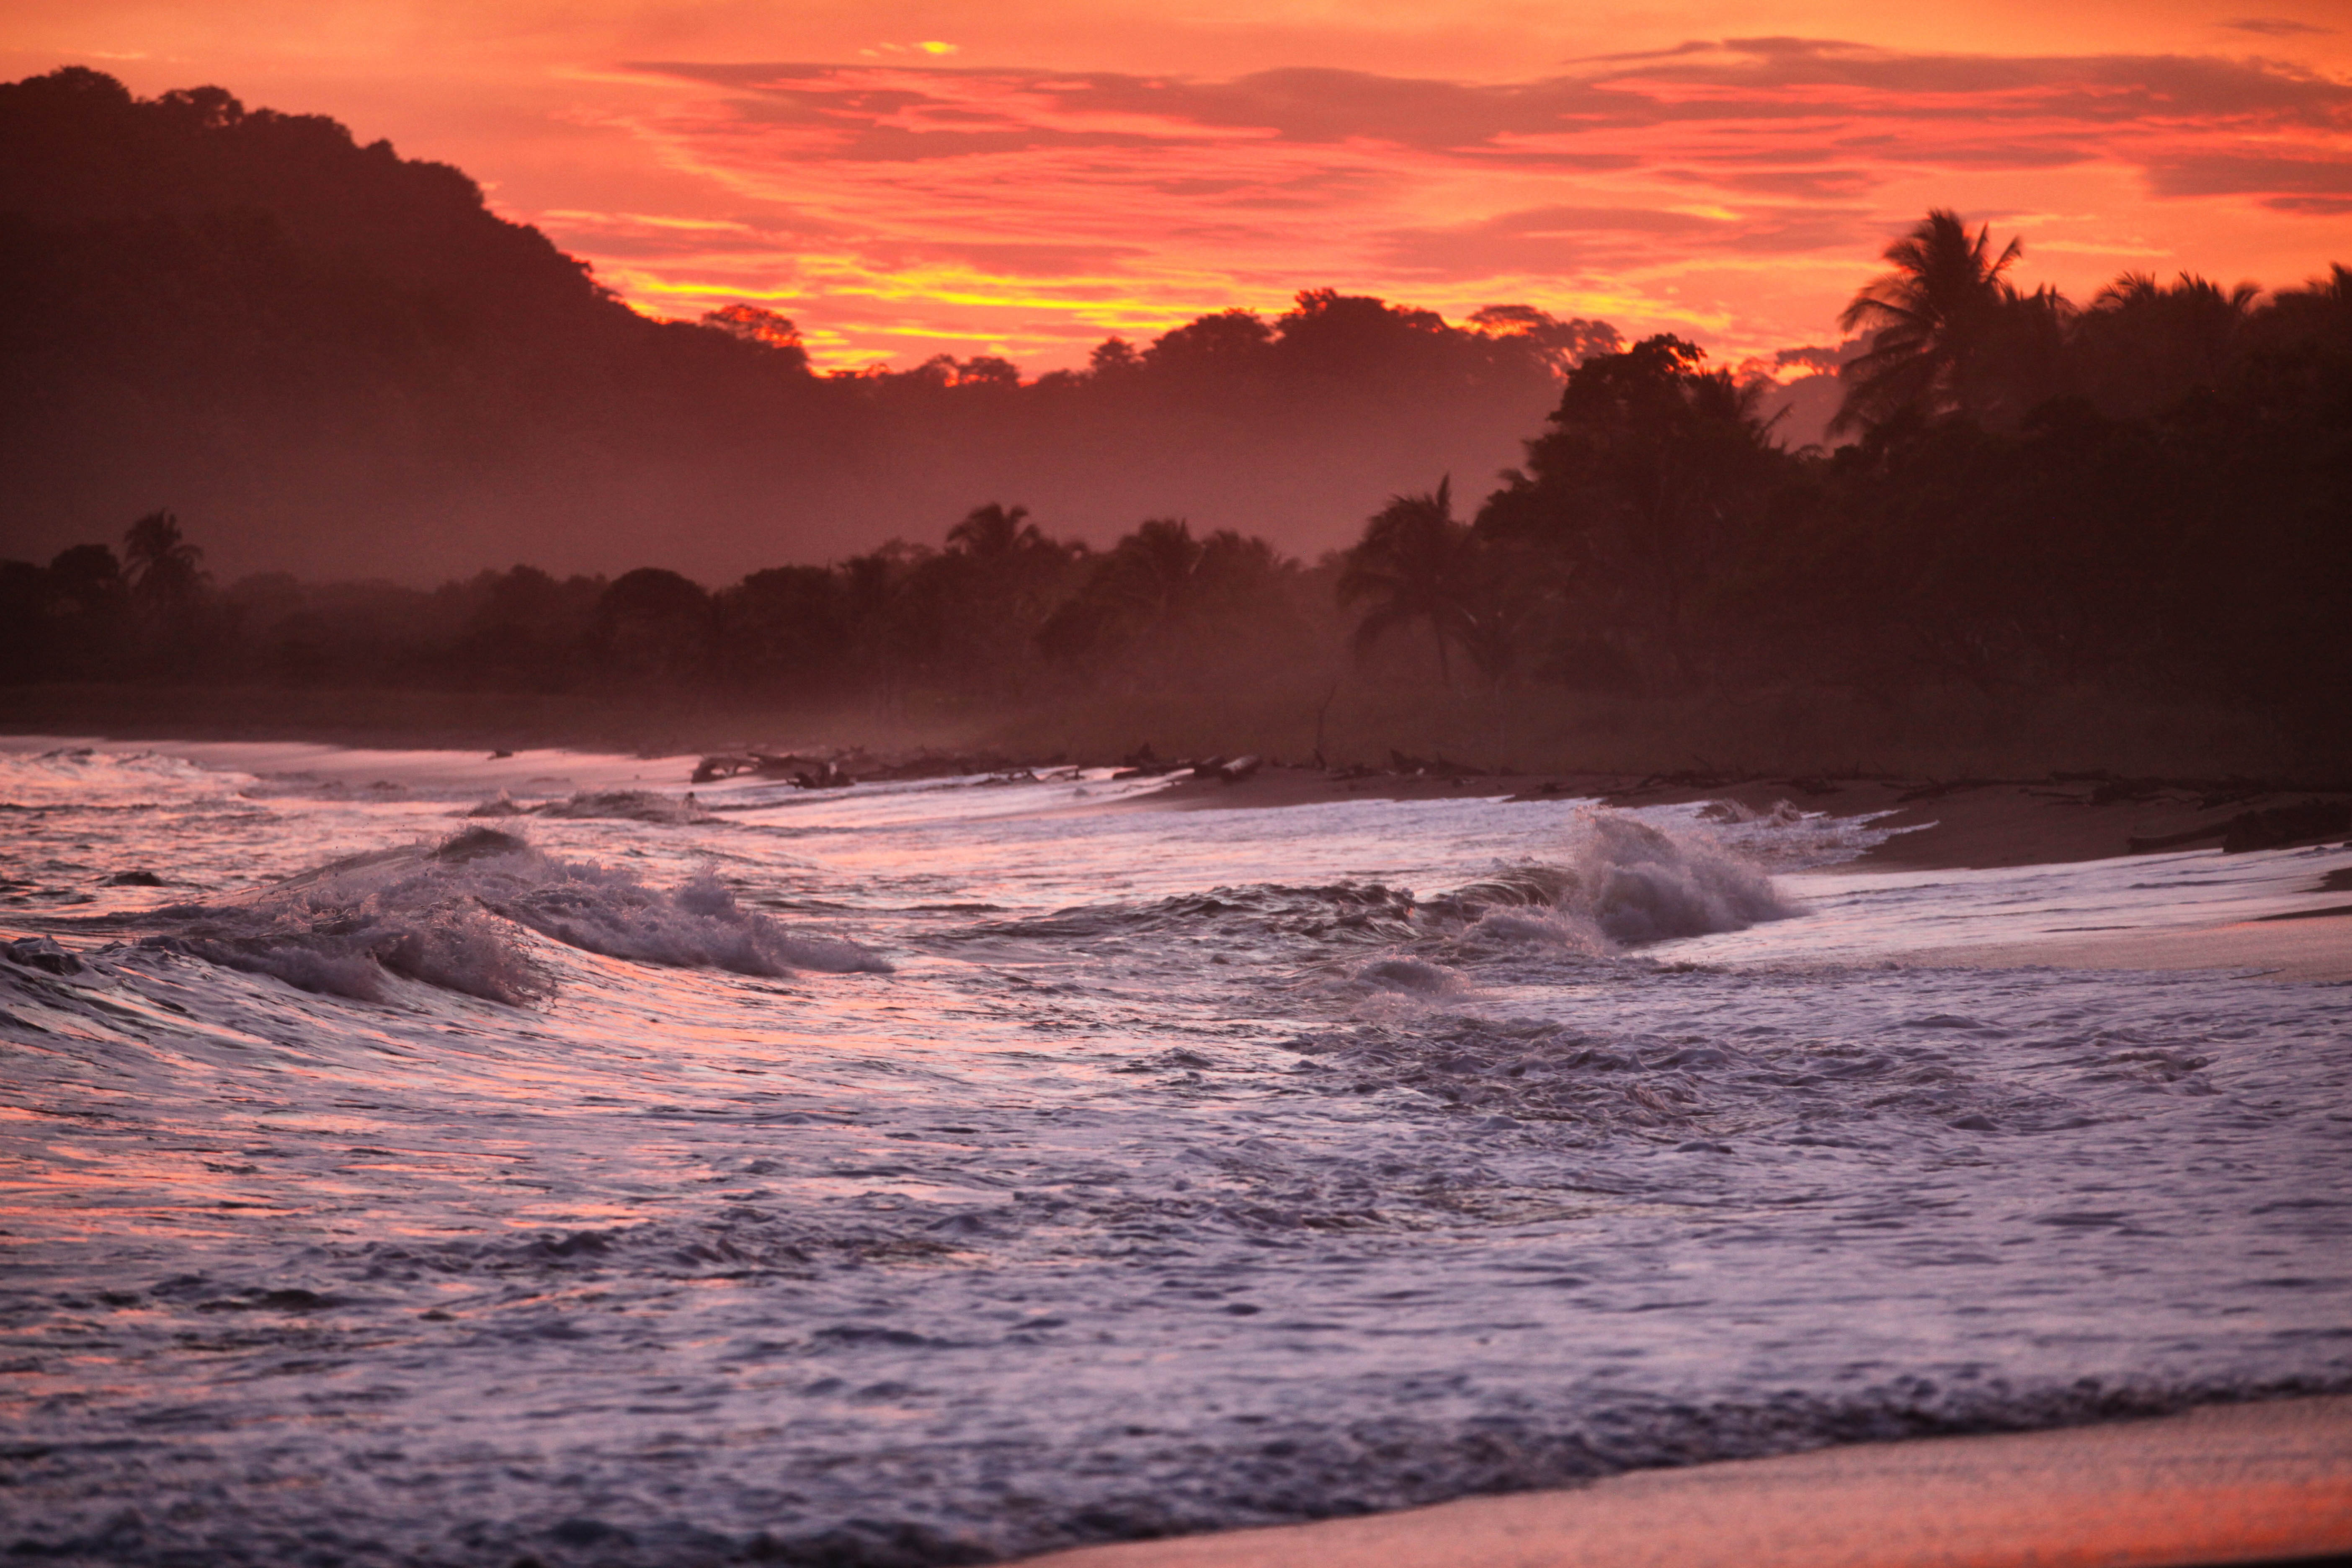 Ruige zee met schuime golven met een rode lucht bij zonsondergang